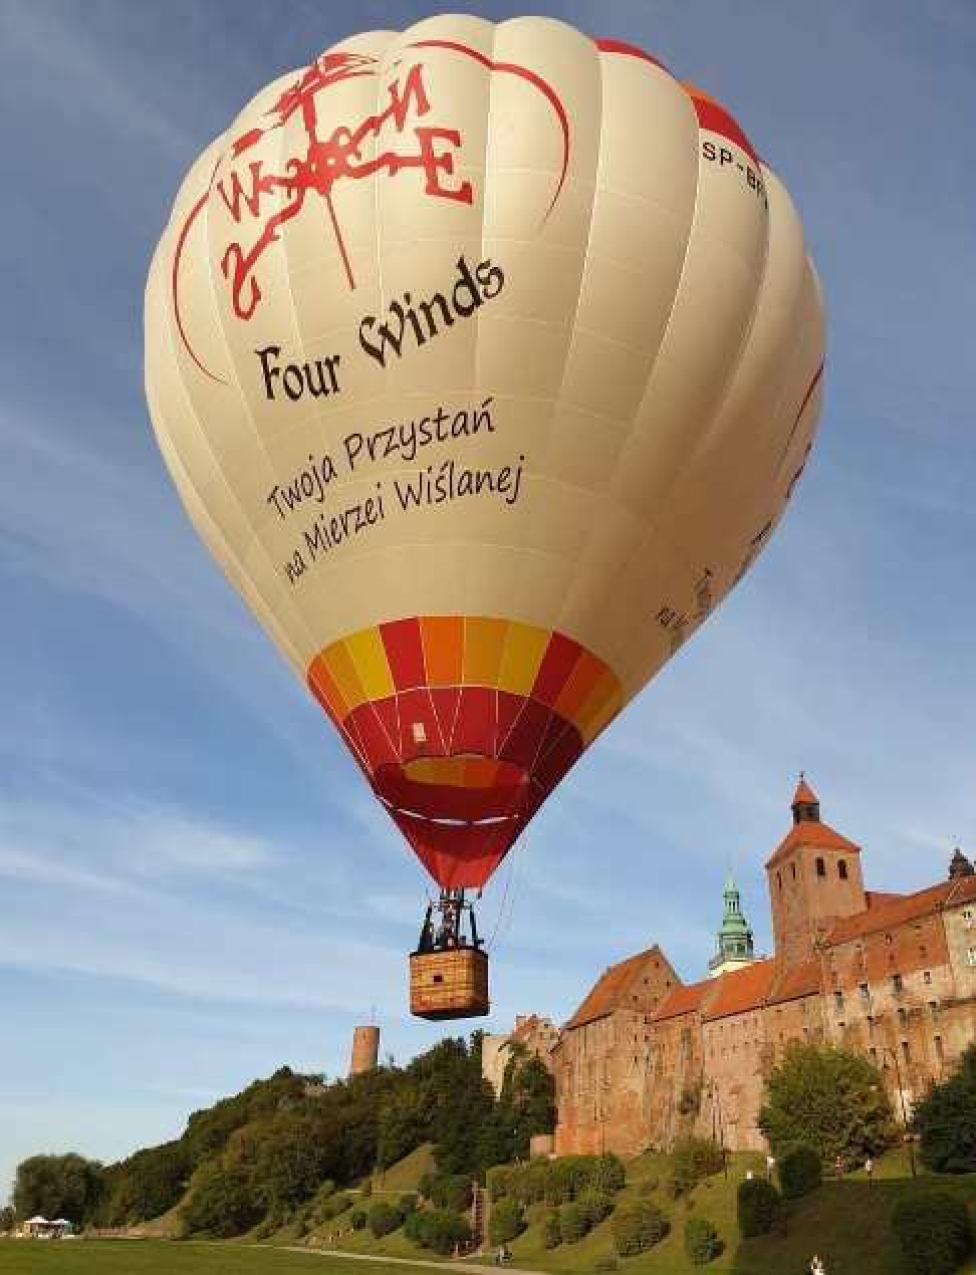 Balon startuje obok Zamku Krzyżackiego w Grudziądzu (fot. Maciej Glamowski/FB)